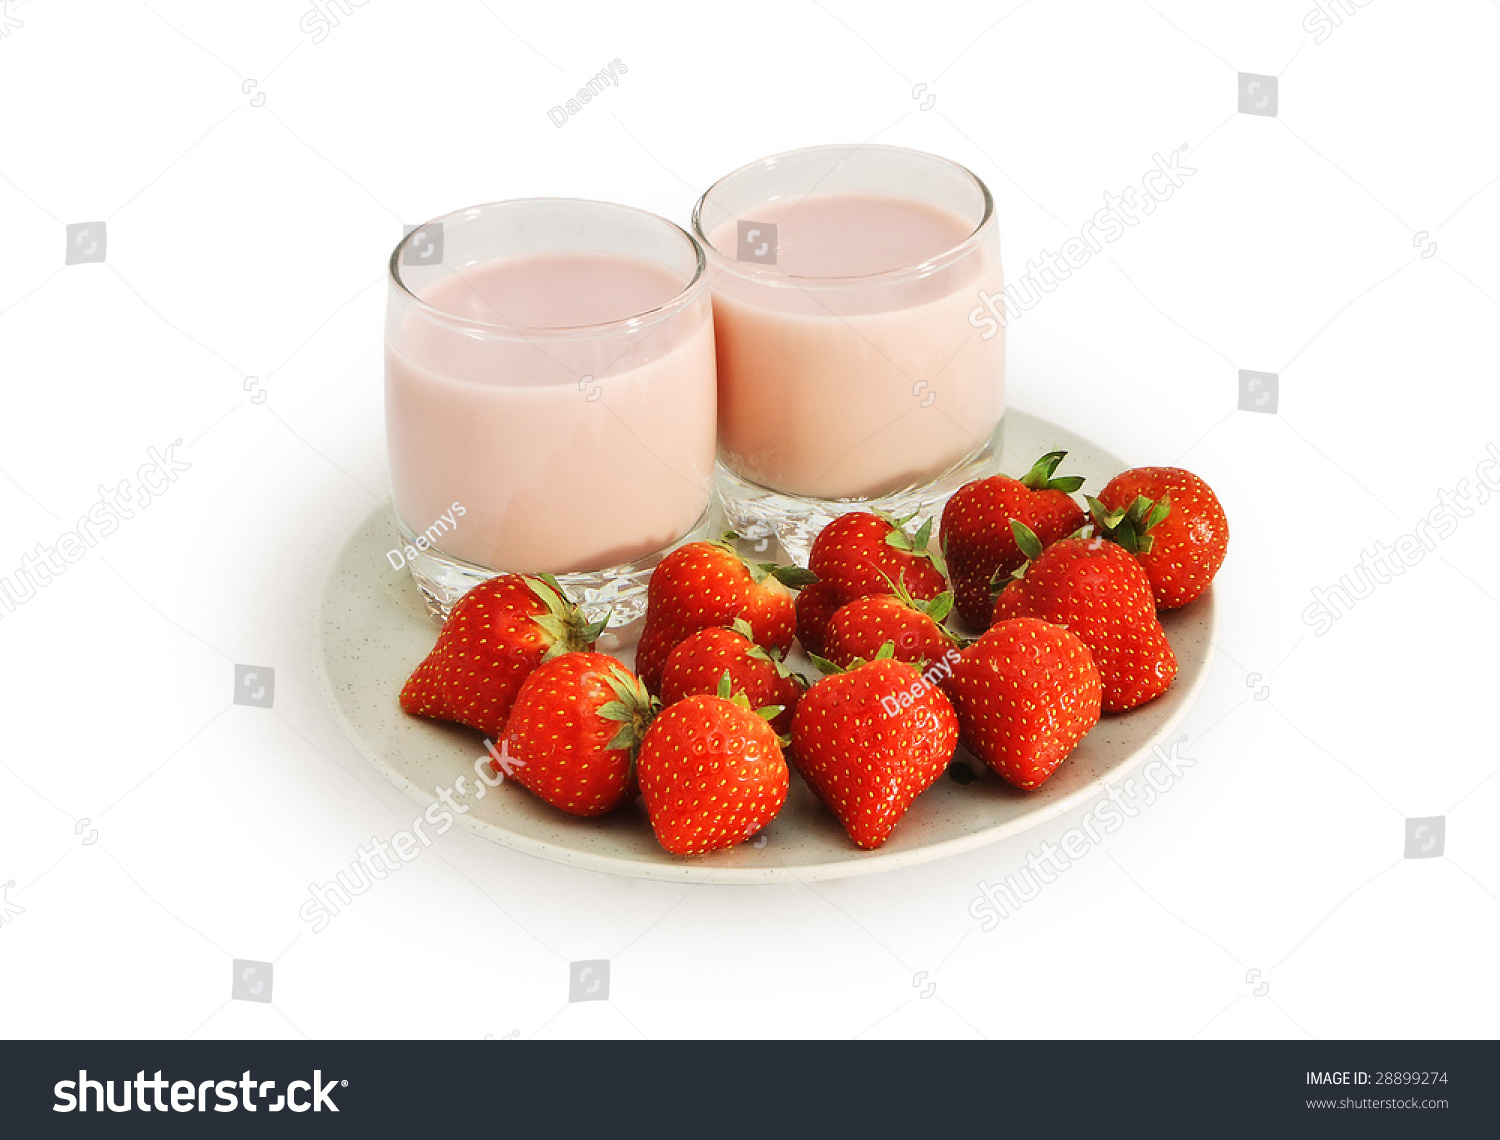 Creamy Strawberry Crepes Recipe